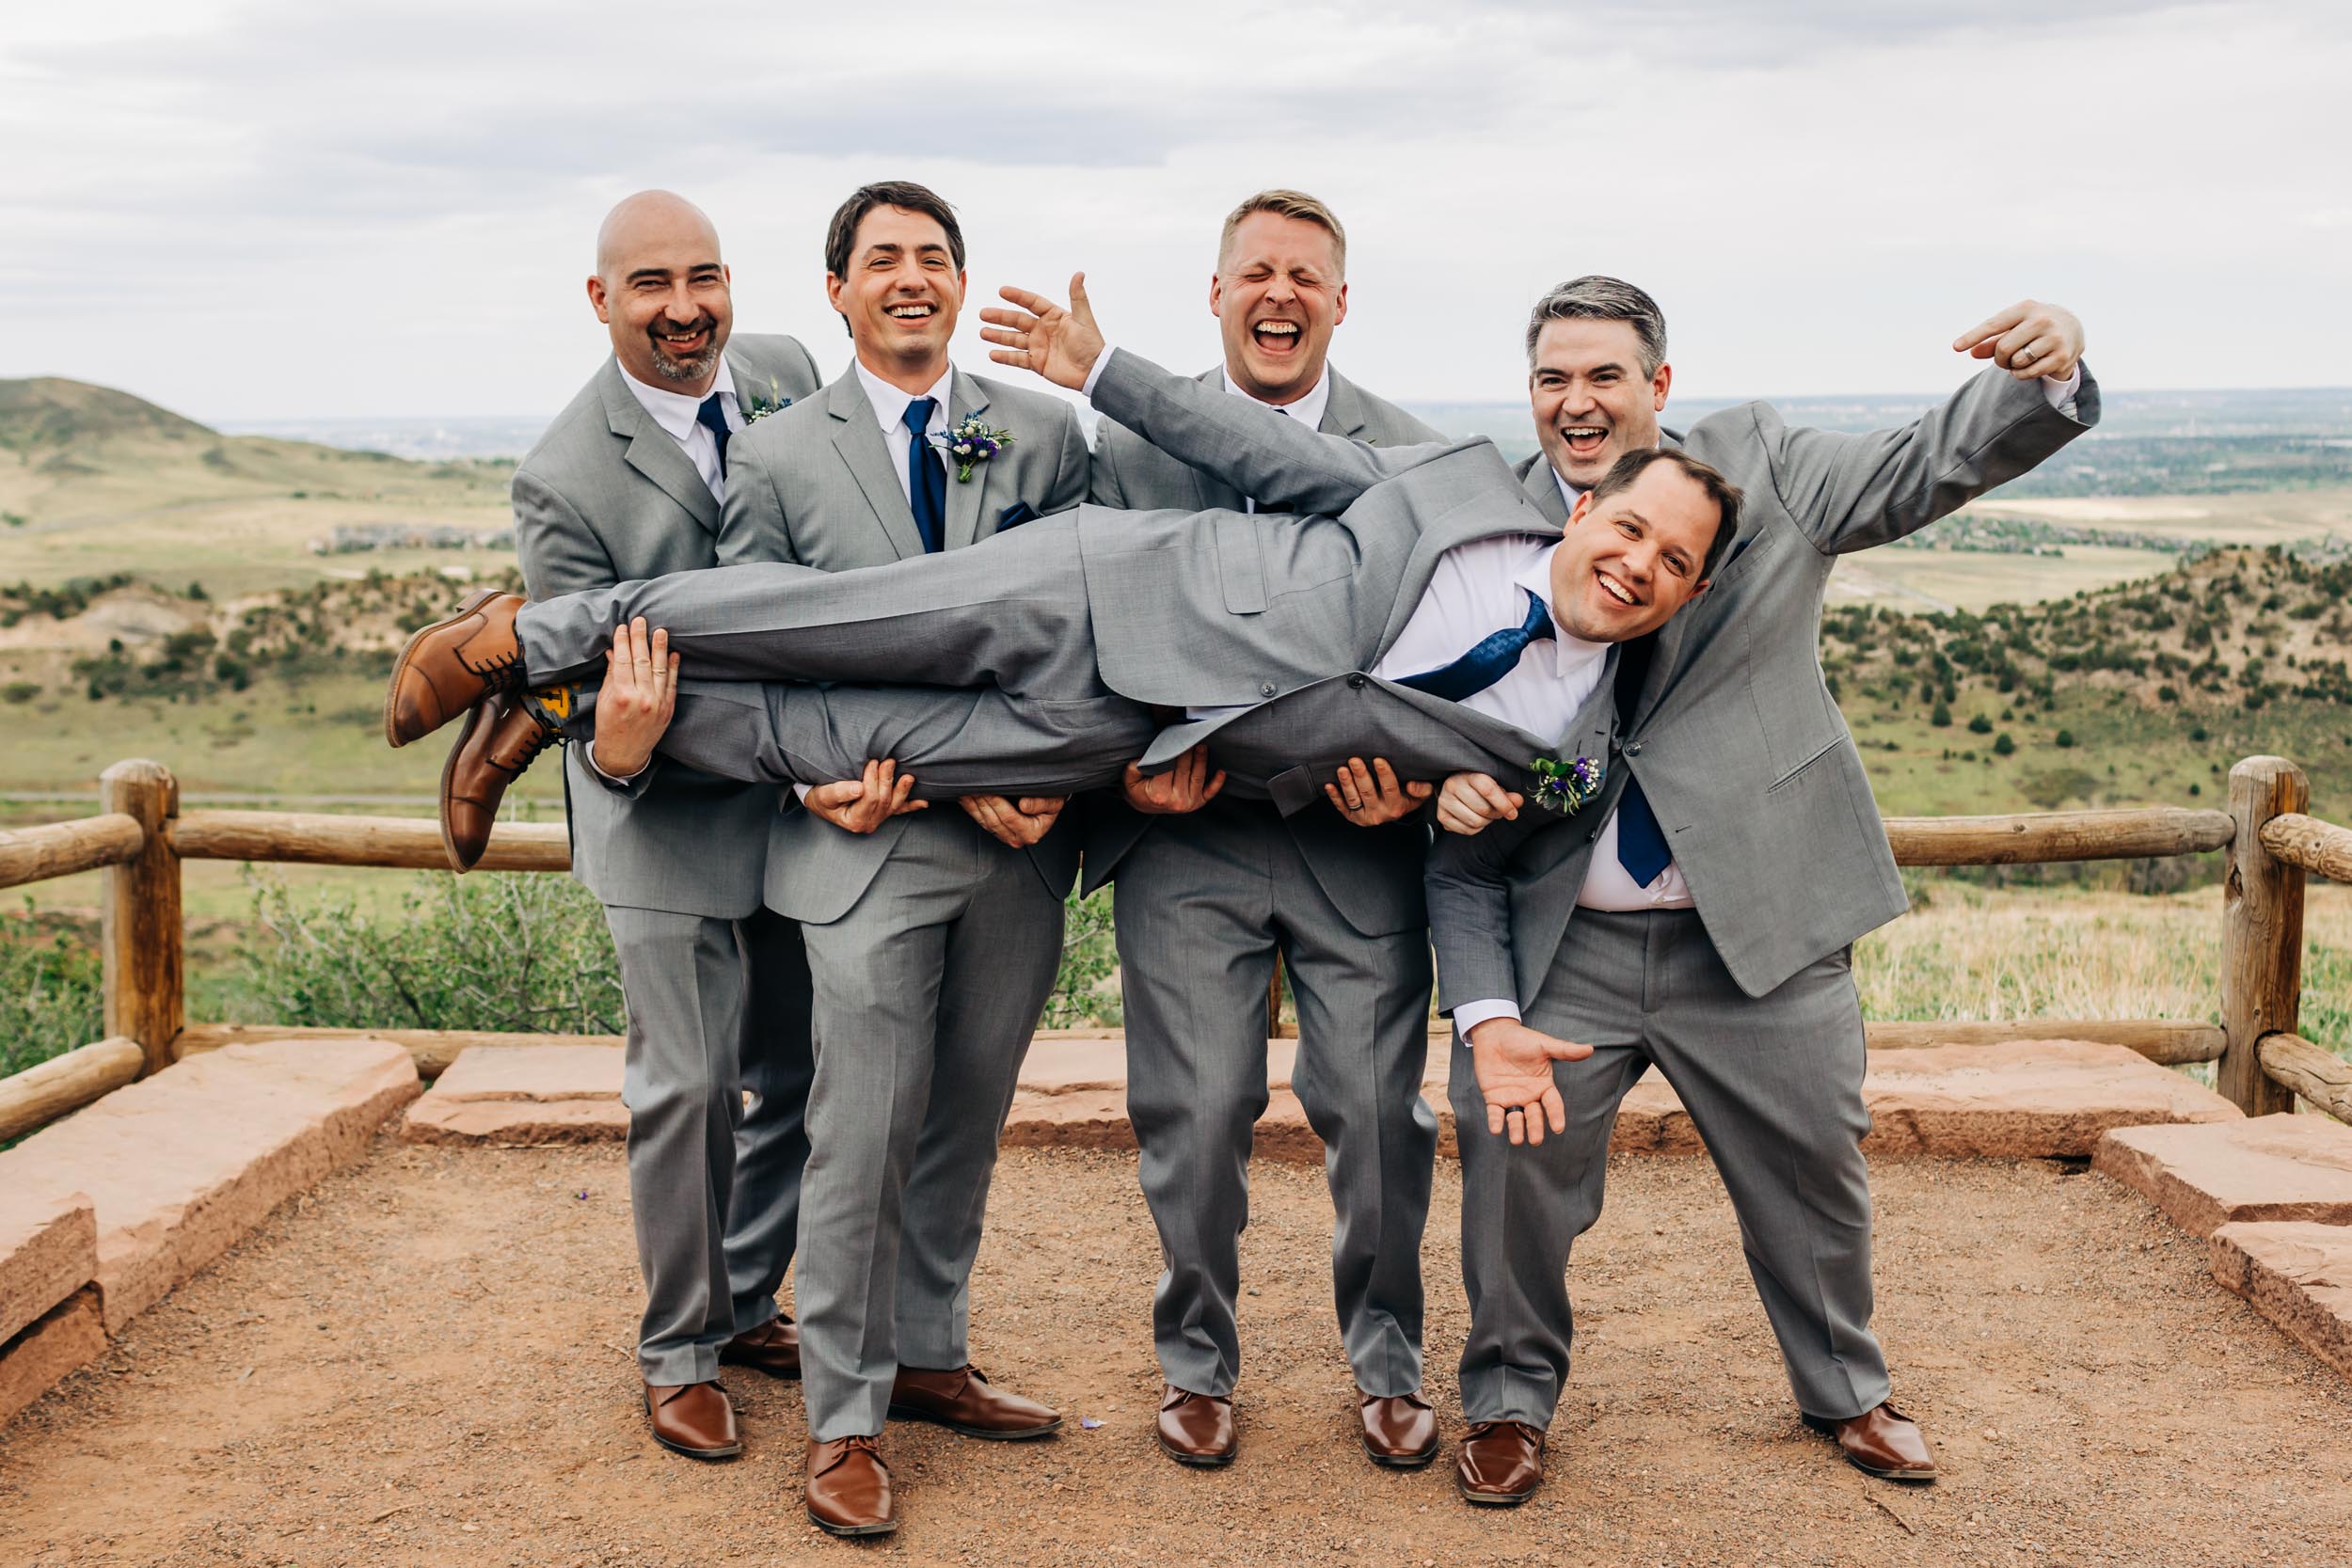 fun groomsmen photos at red rocks